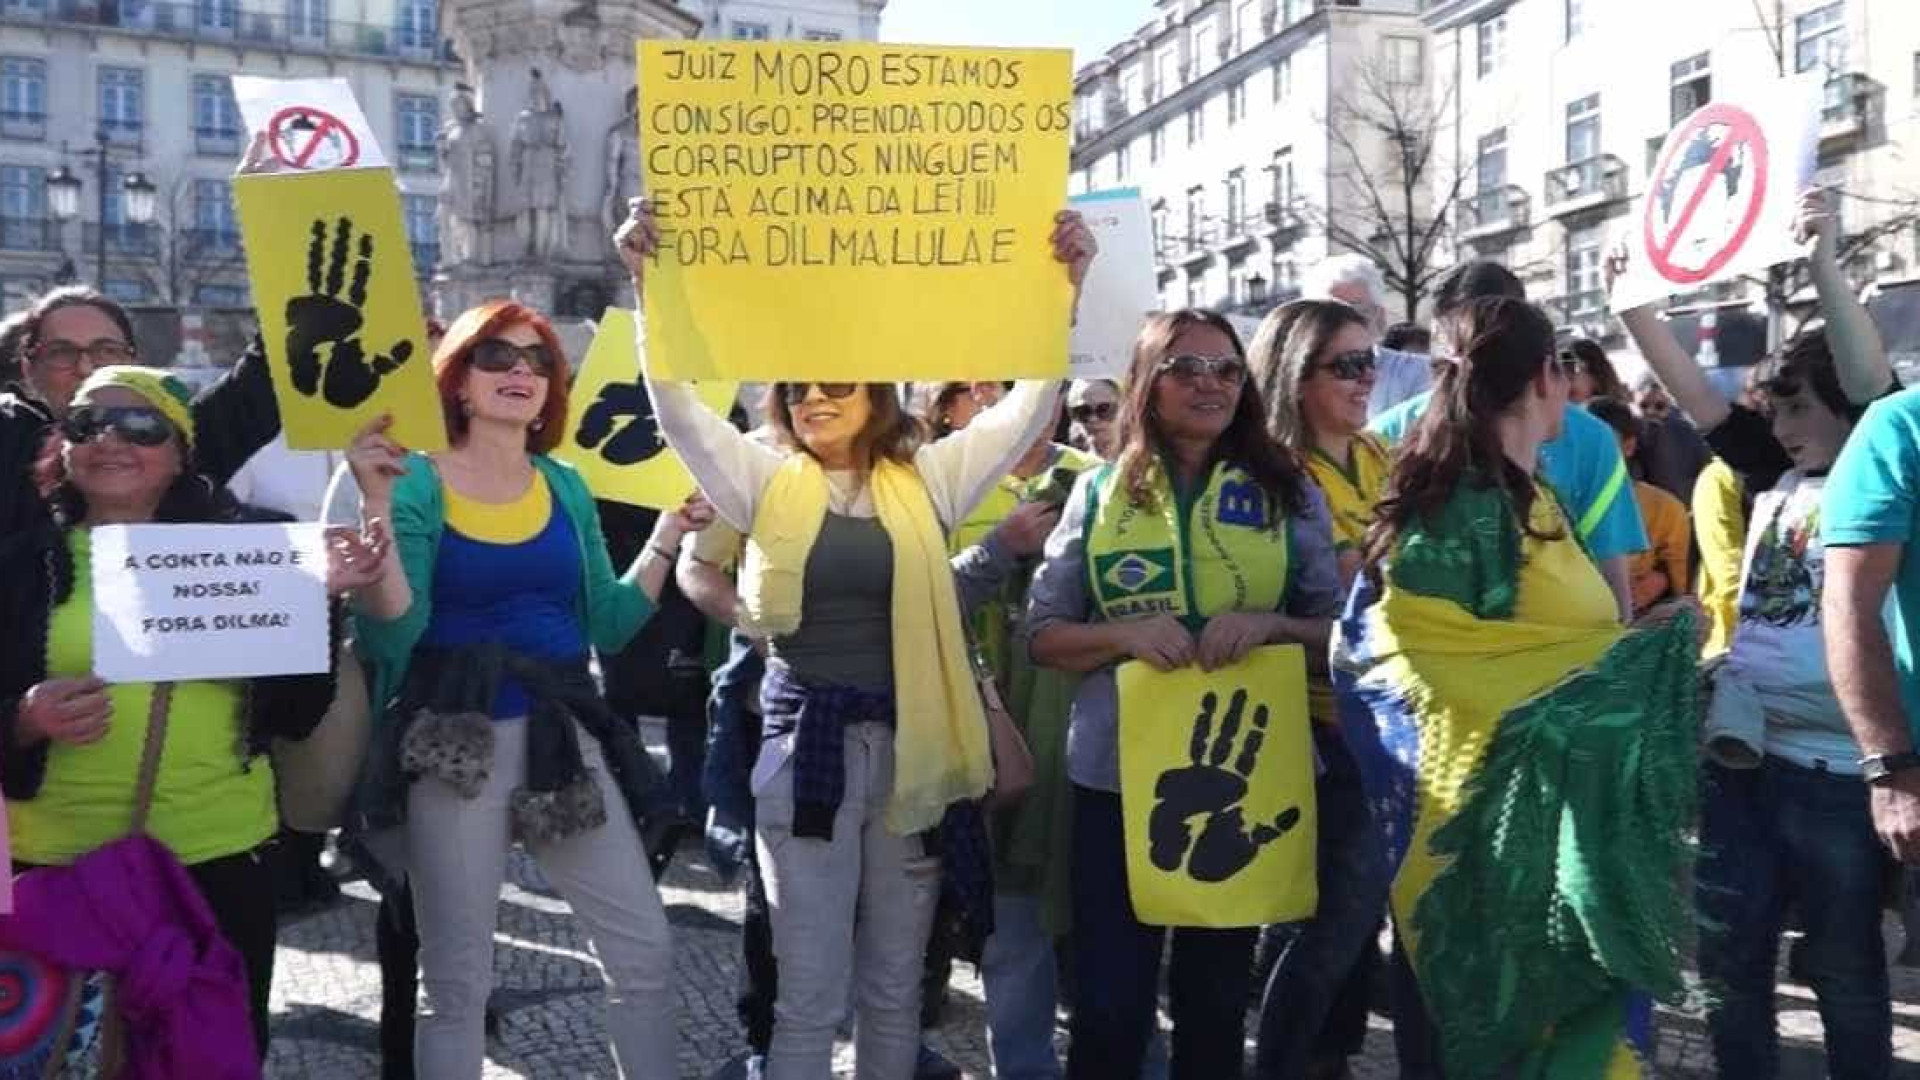 Brasileiros em Portugal também fazem ato contra Governo Dilma. Veja fotos!